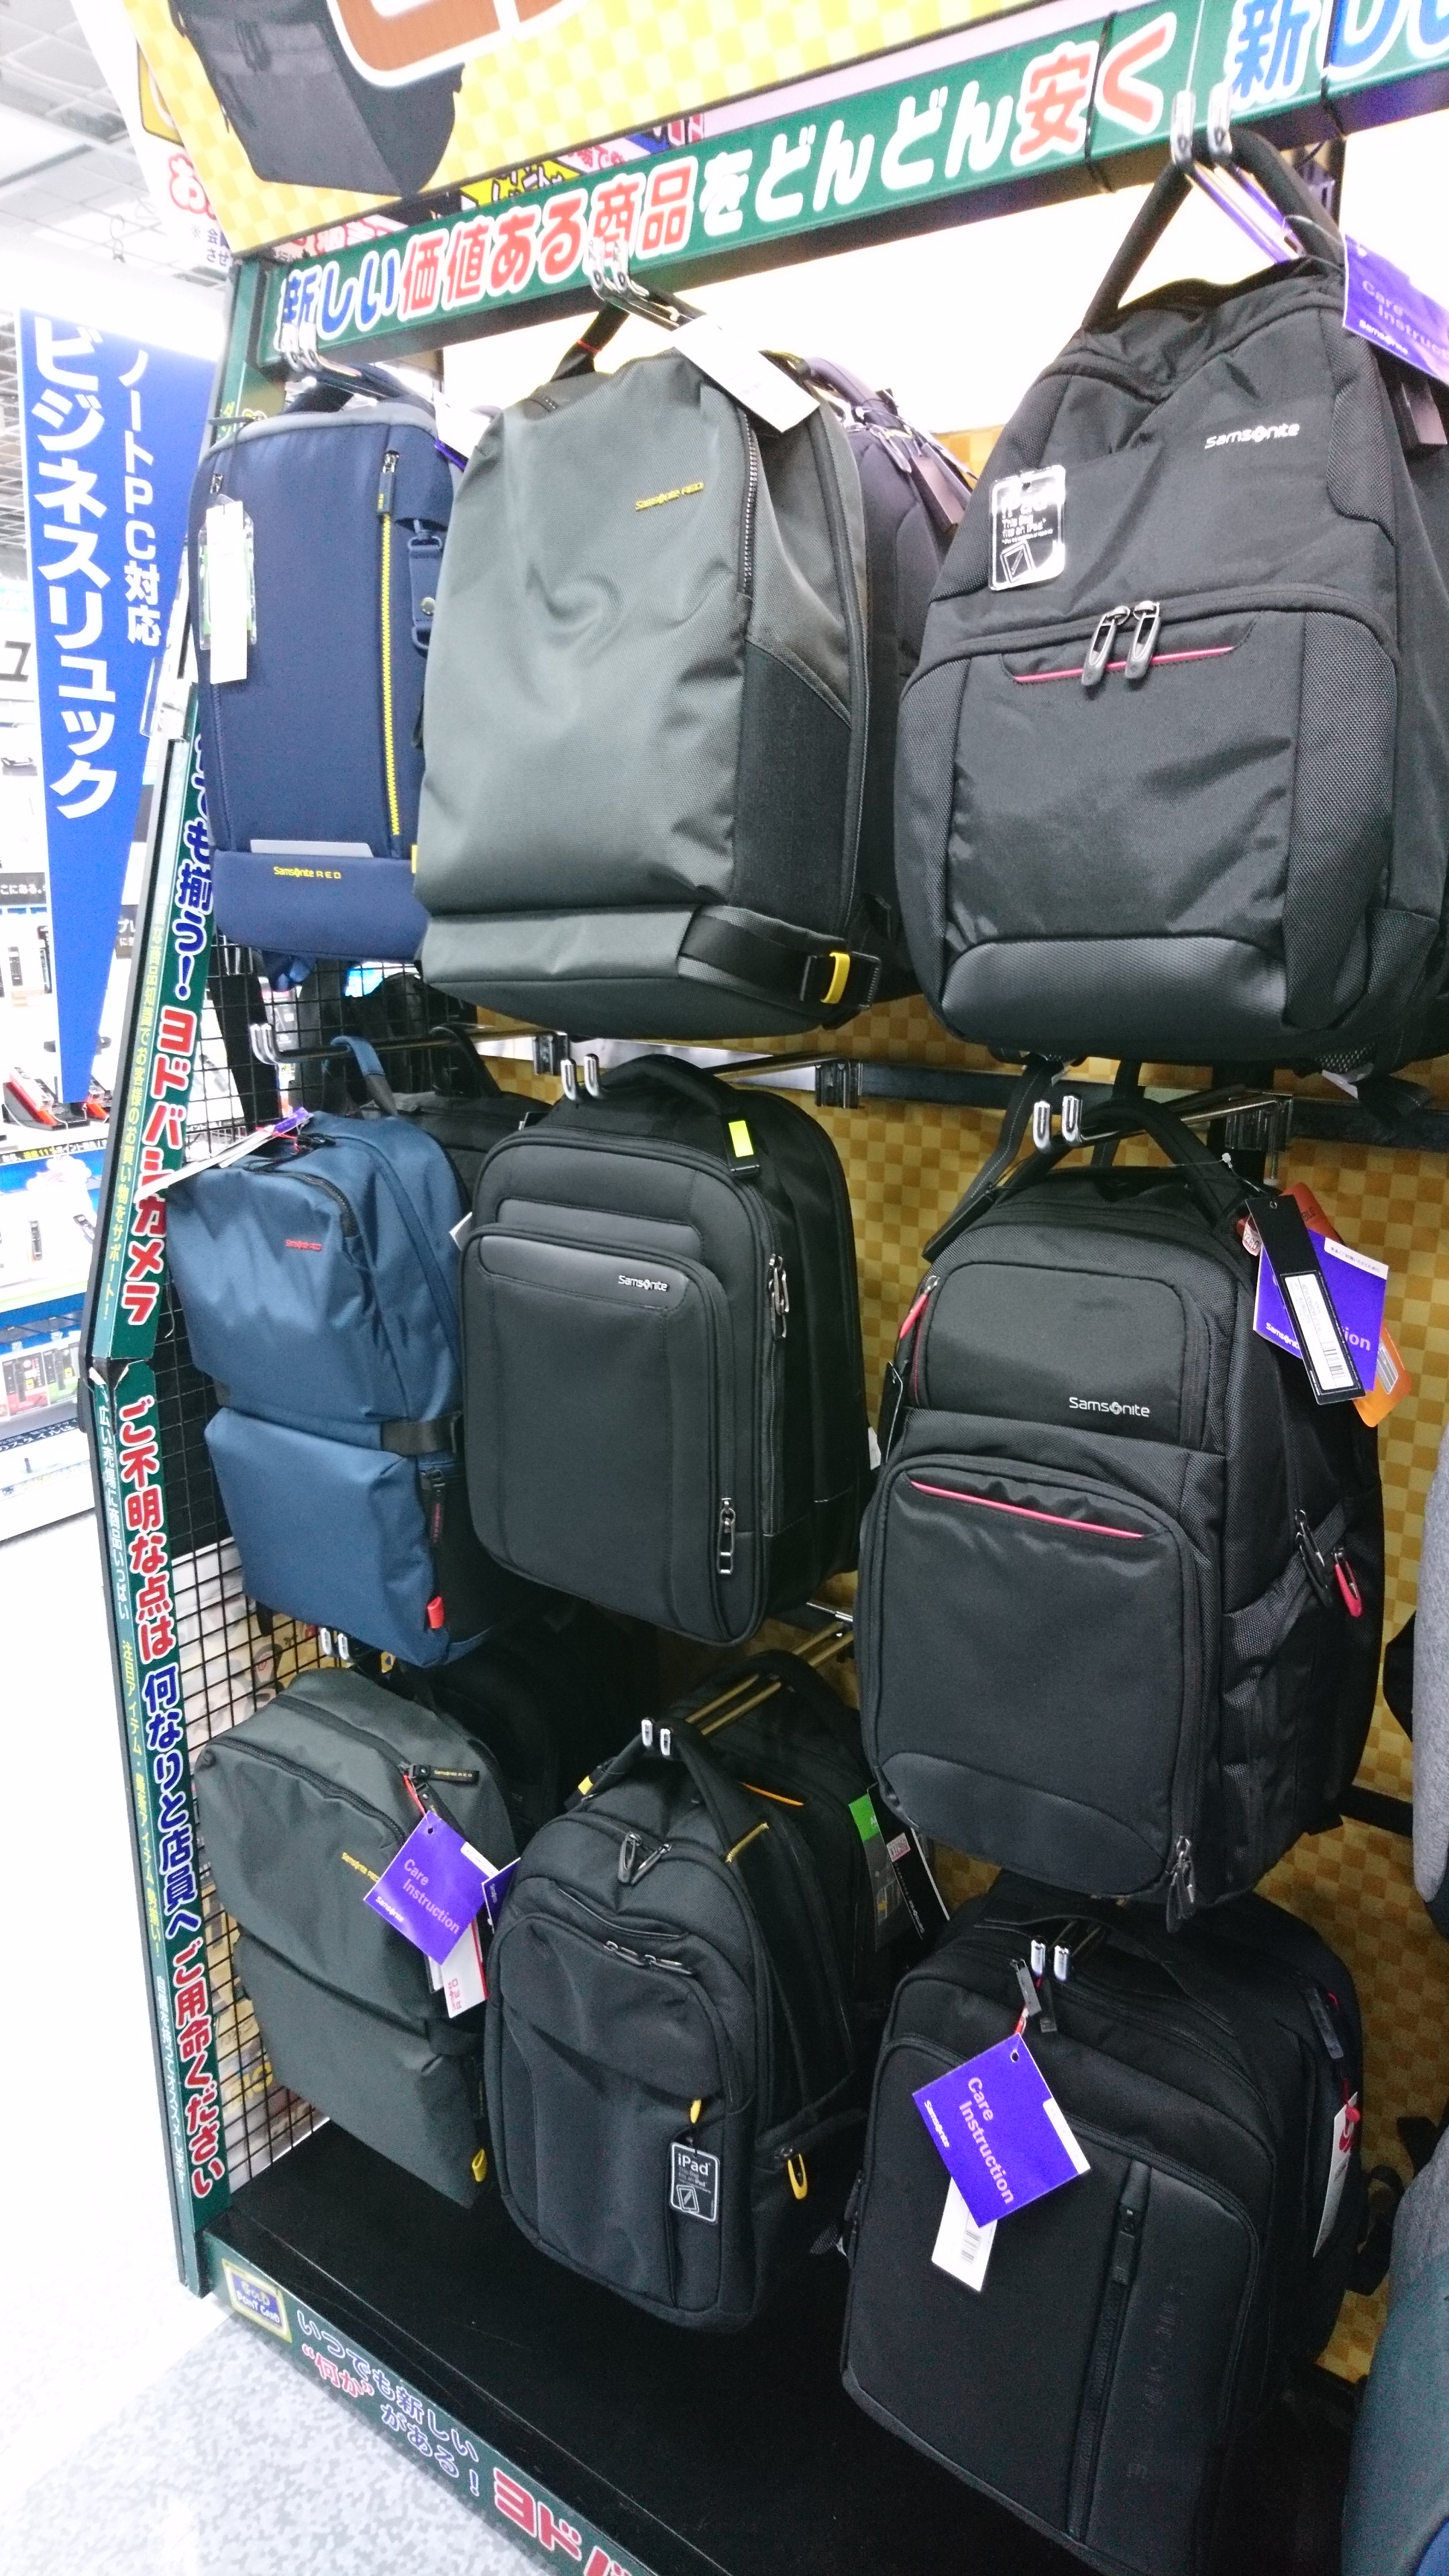 ヨドバシカメラ 横浜店 ヨドバシ横浜 2fパソコン周辺機器コーナーでは 引き続きビジネスバッグ強化中 スーツケースで有名な サムソナイト バッグも数多くラインナップ カジュアルな装いの サムソナイトレッド シリーズもご用意 上品で フィット感